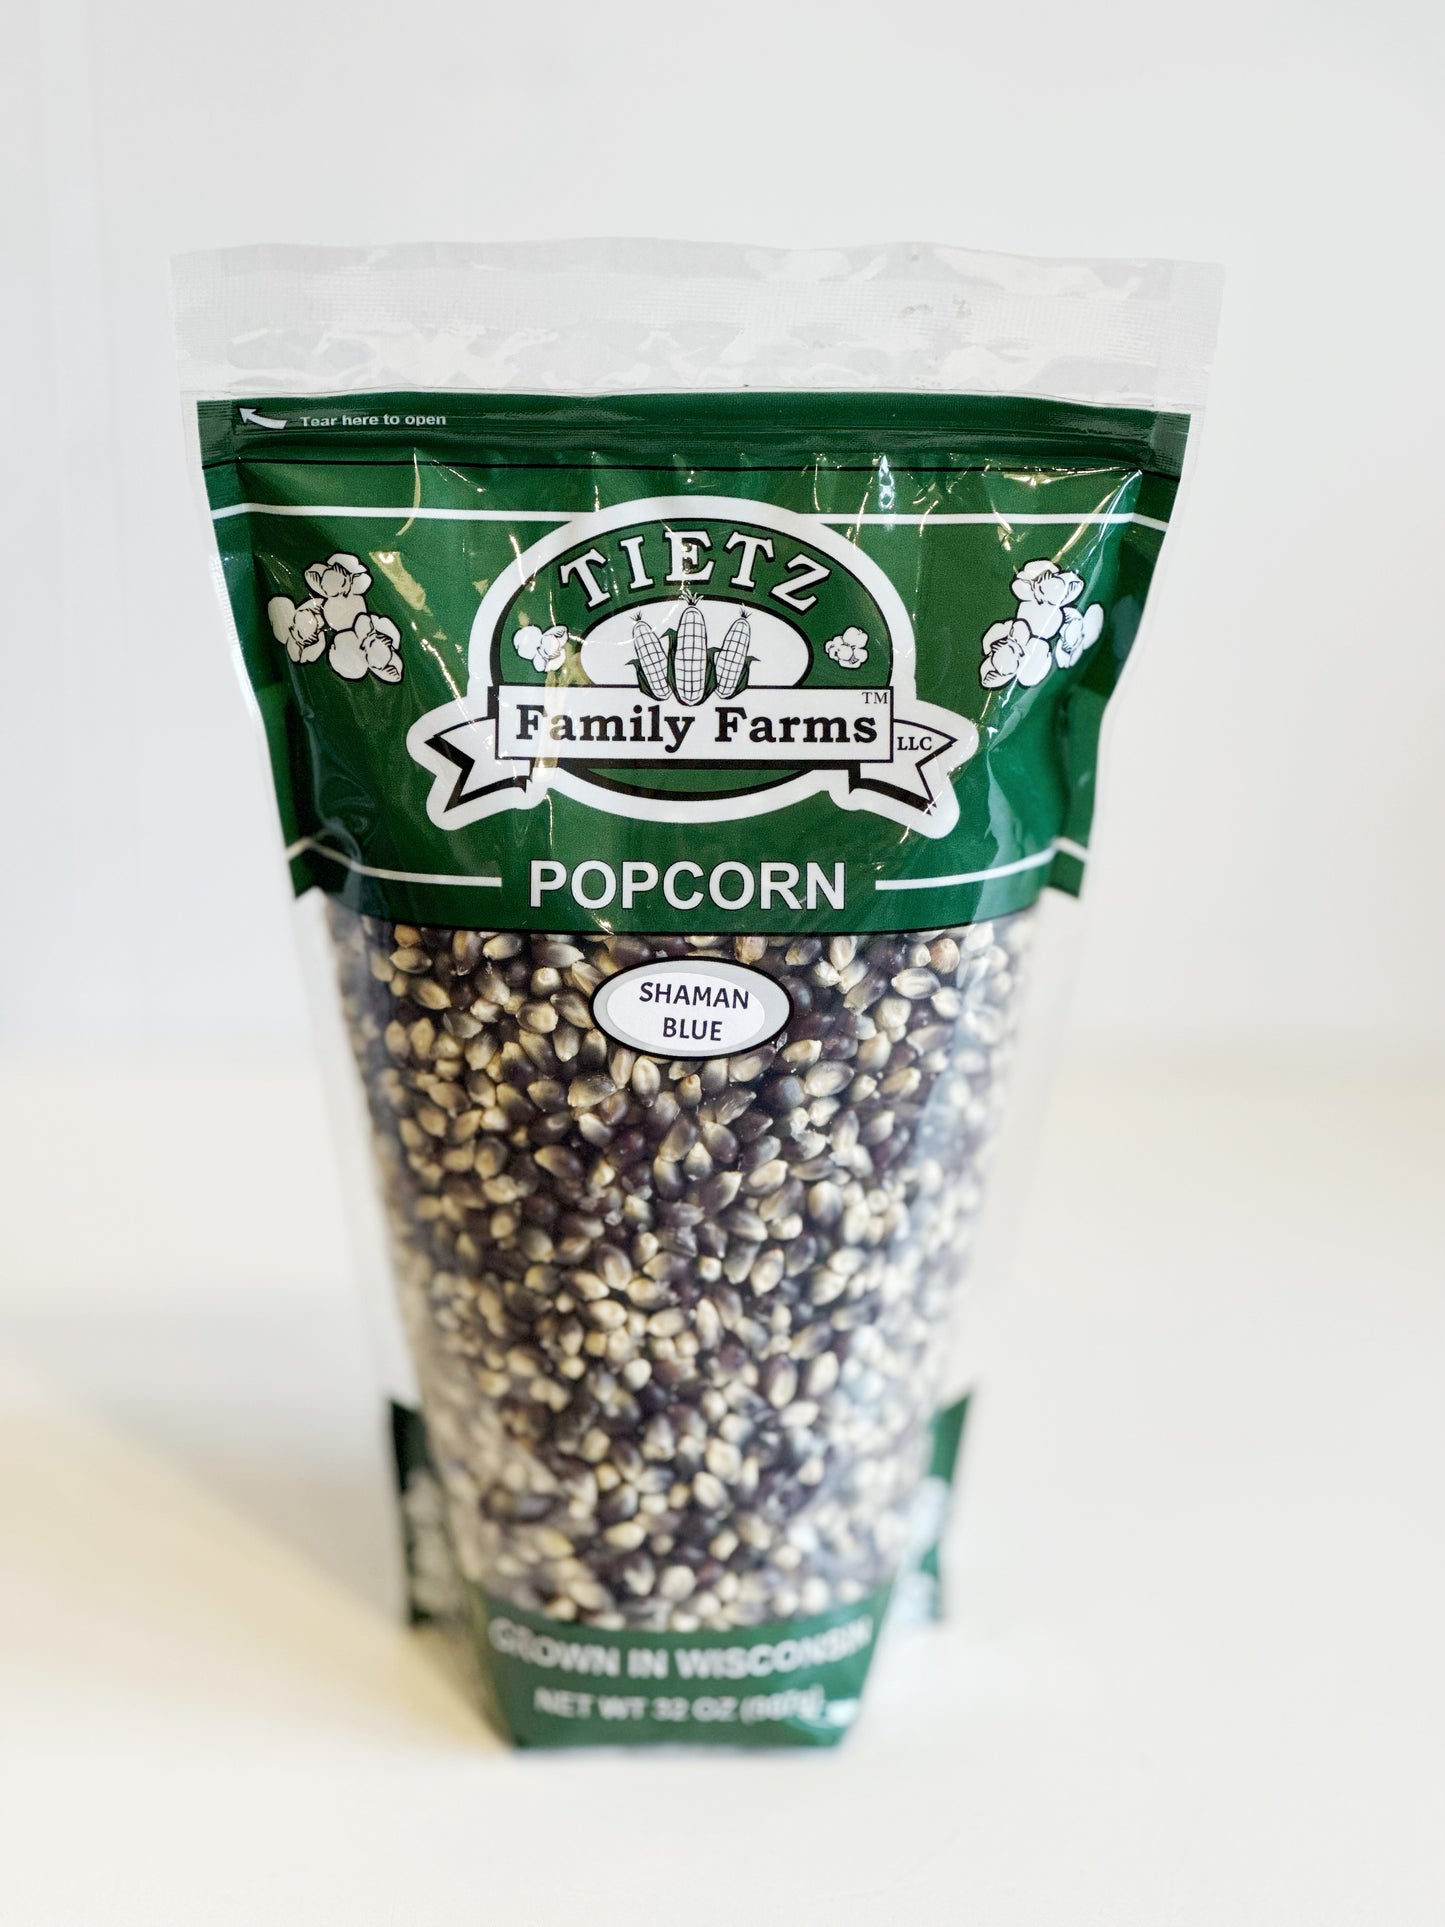 Tietz Family Farm Popcorn